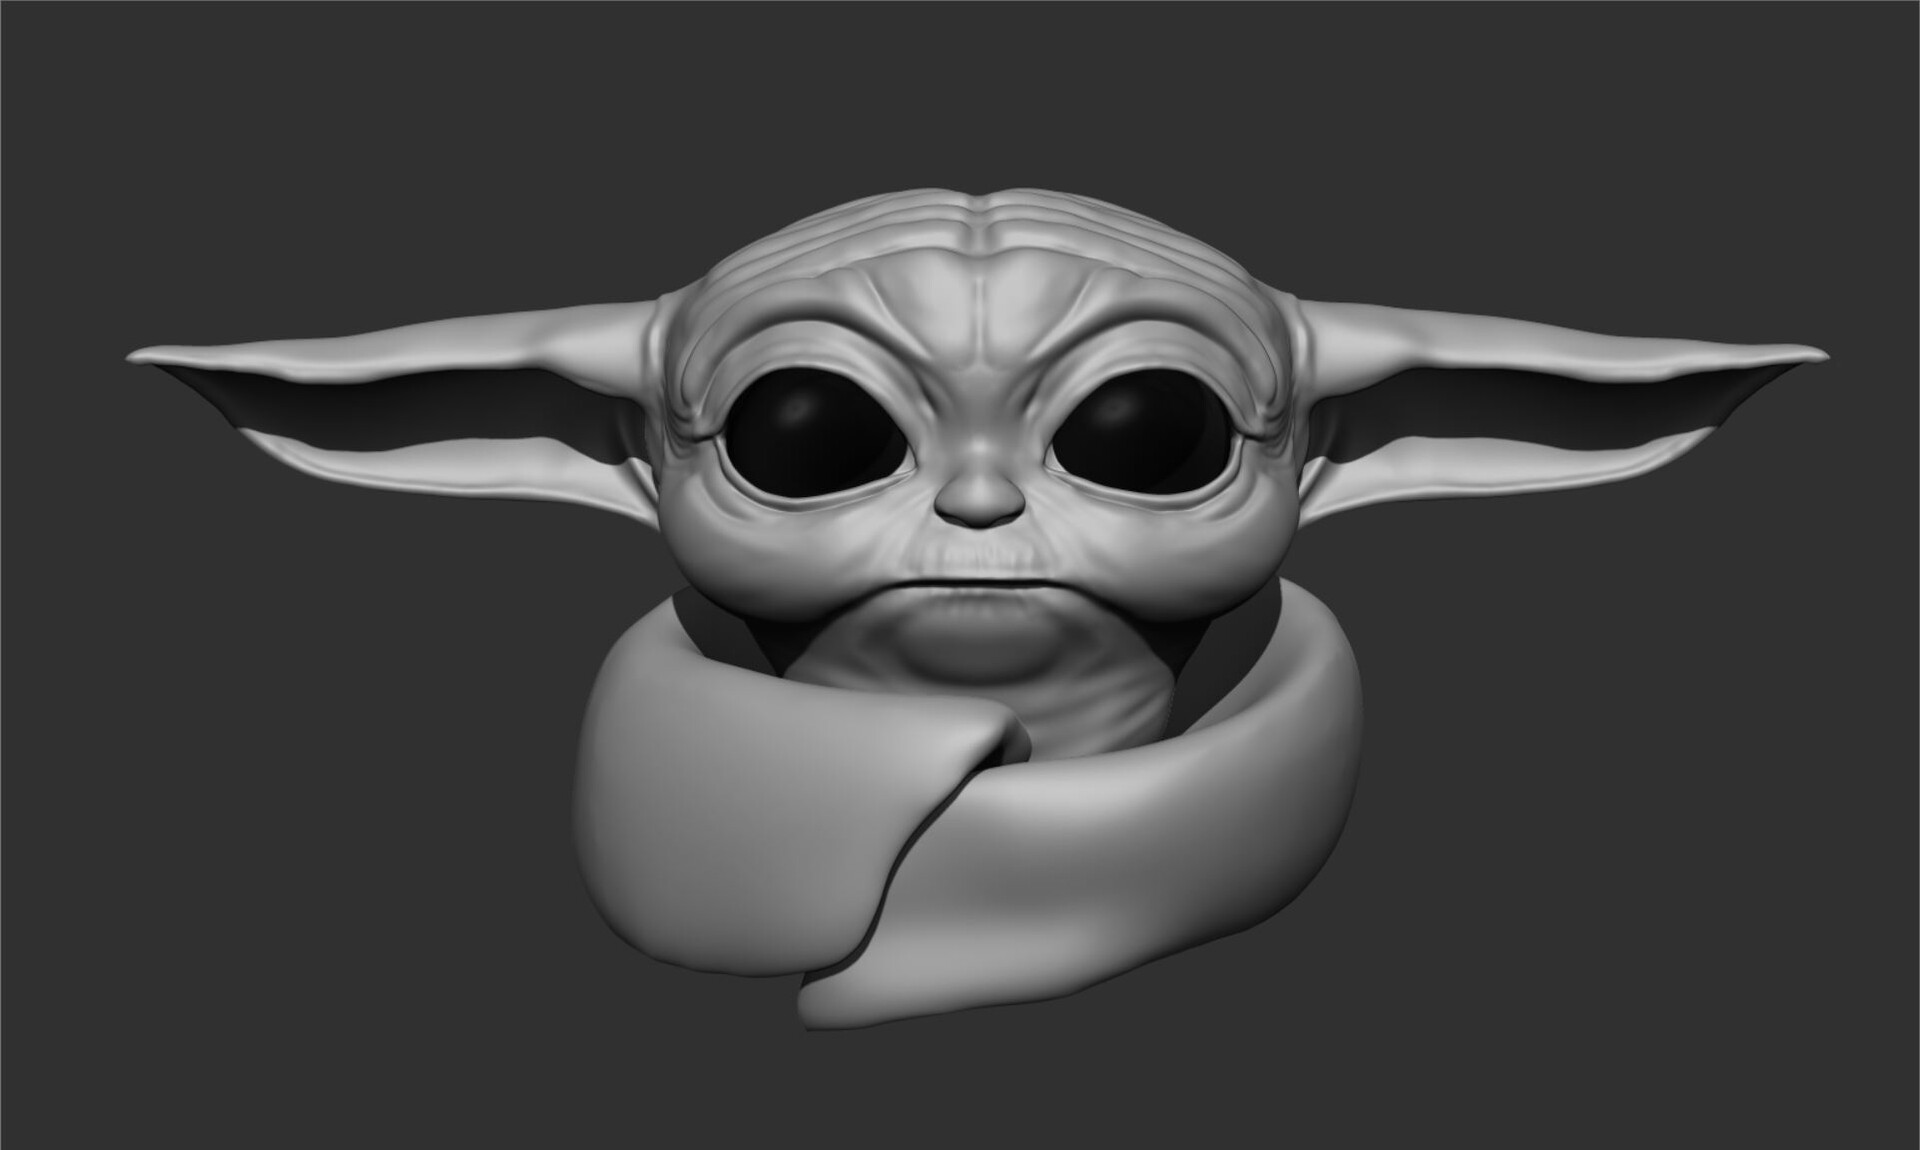 ArtStation - Baby Yoda Head Sculpt